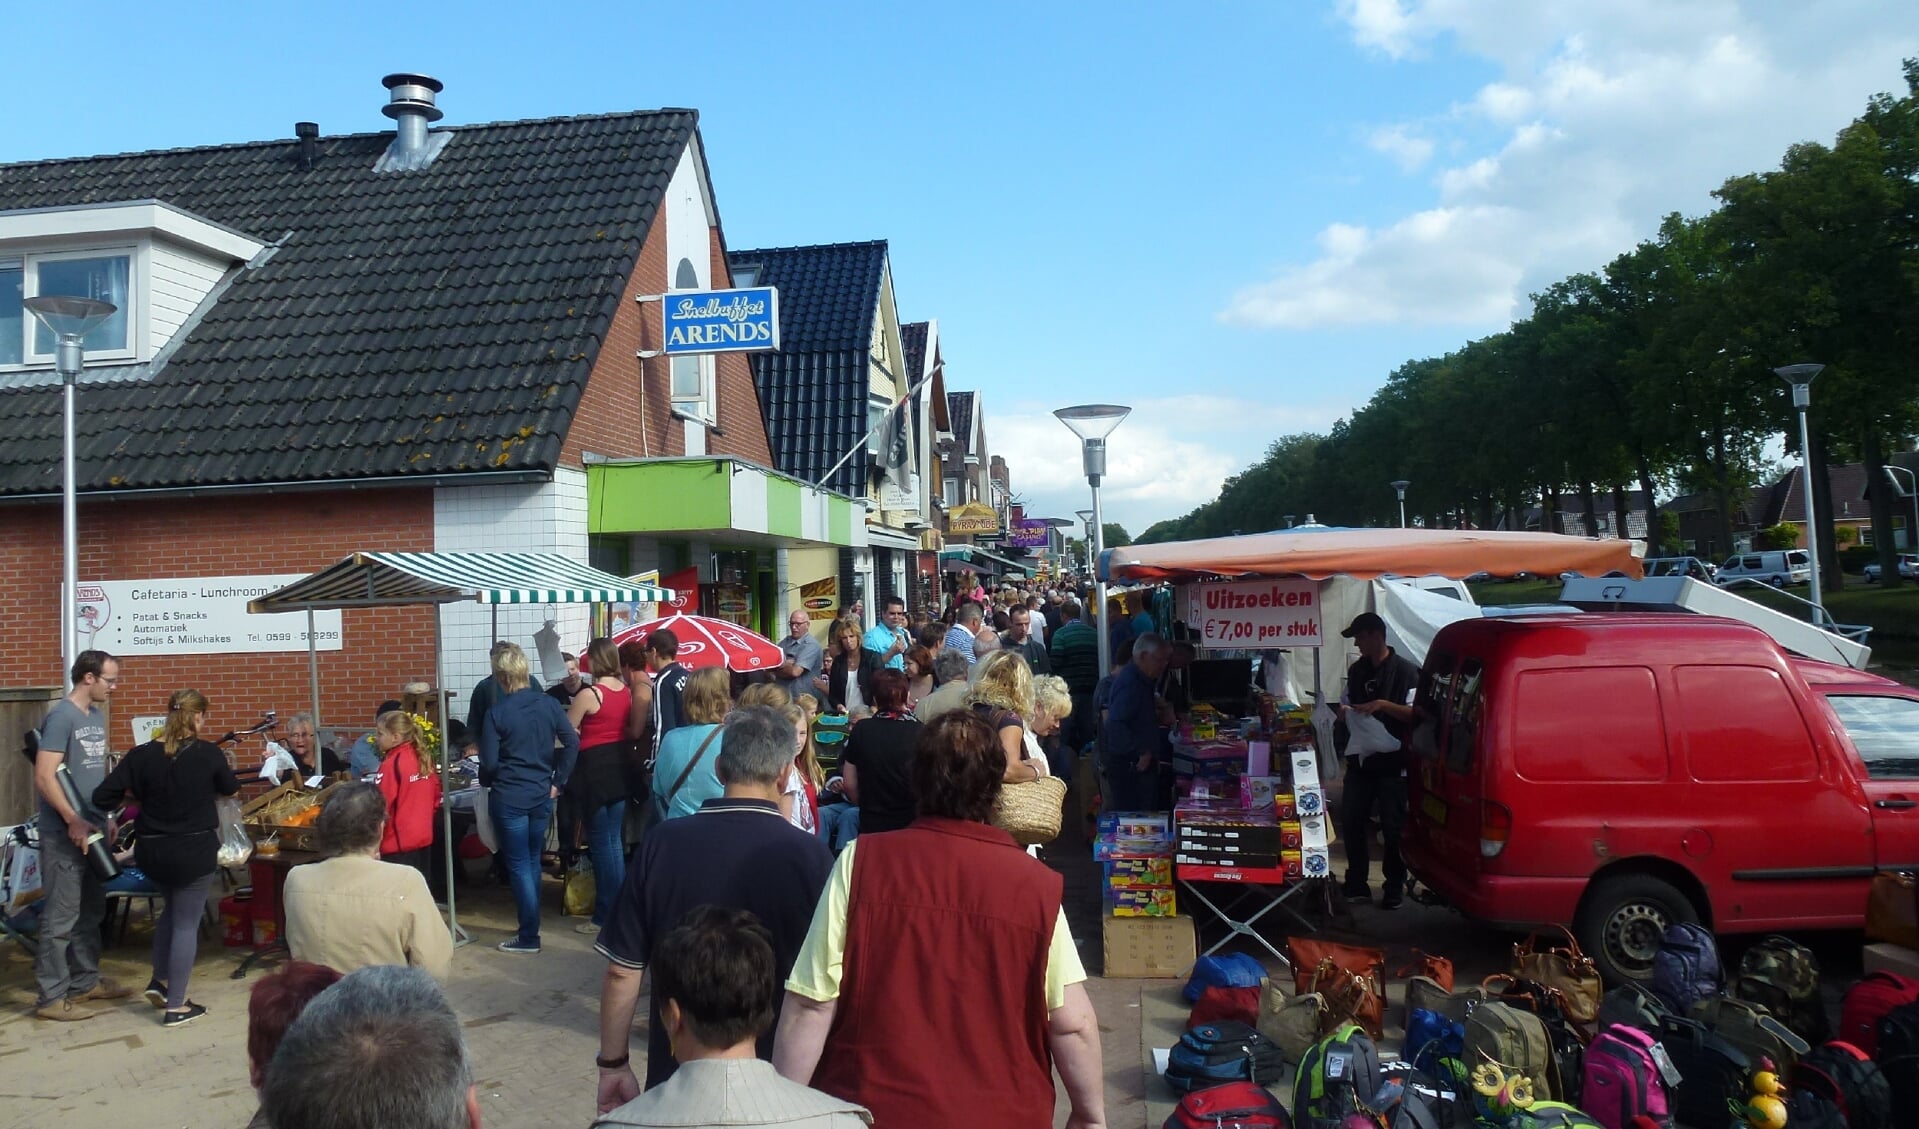 Gezellige drukte tijdens een eerdere editie van de Boeskoolmarkt in Ter Apel. (foto: Jaarmarktcommissie Boeskoolmarkt) 